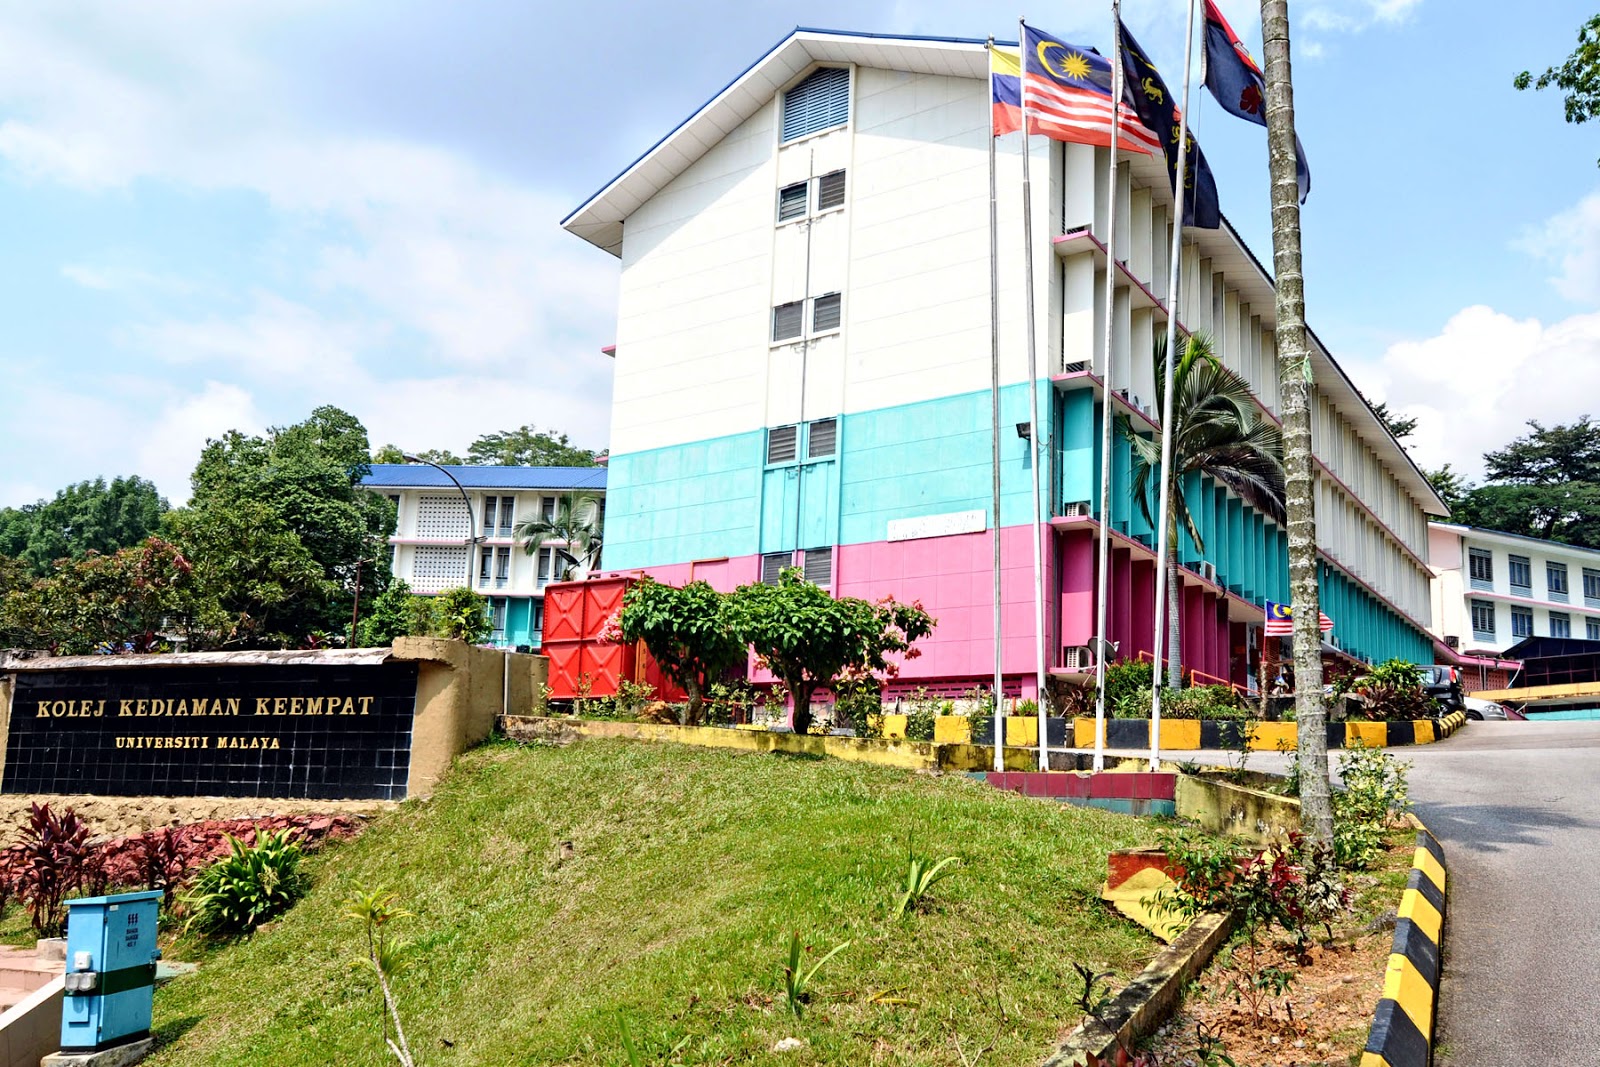 Kolej Kediaman Universiti Malaya : Kolej kediaman keempat, universiti